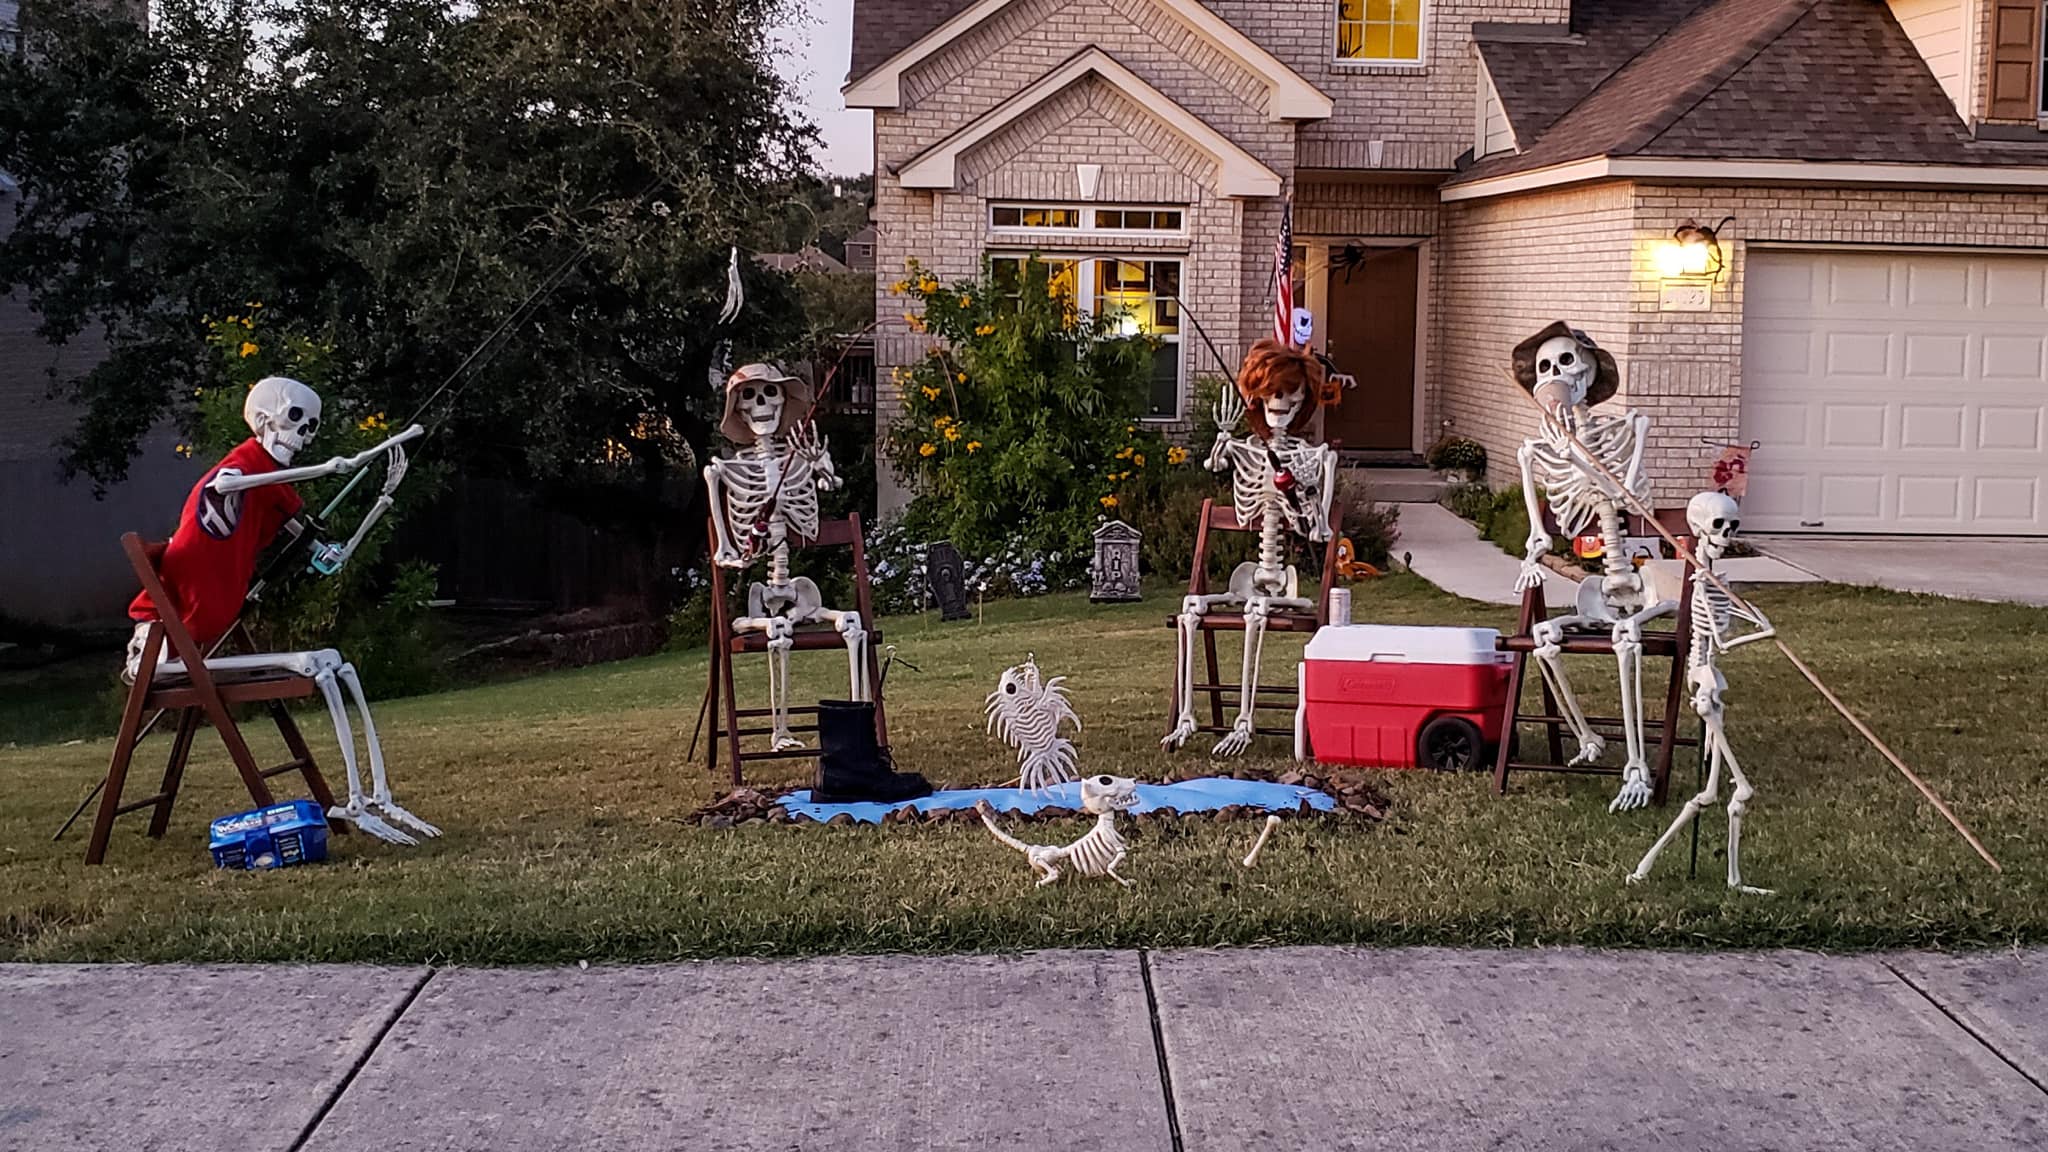 Skeleton House of San Antonio display of skeletons fishing